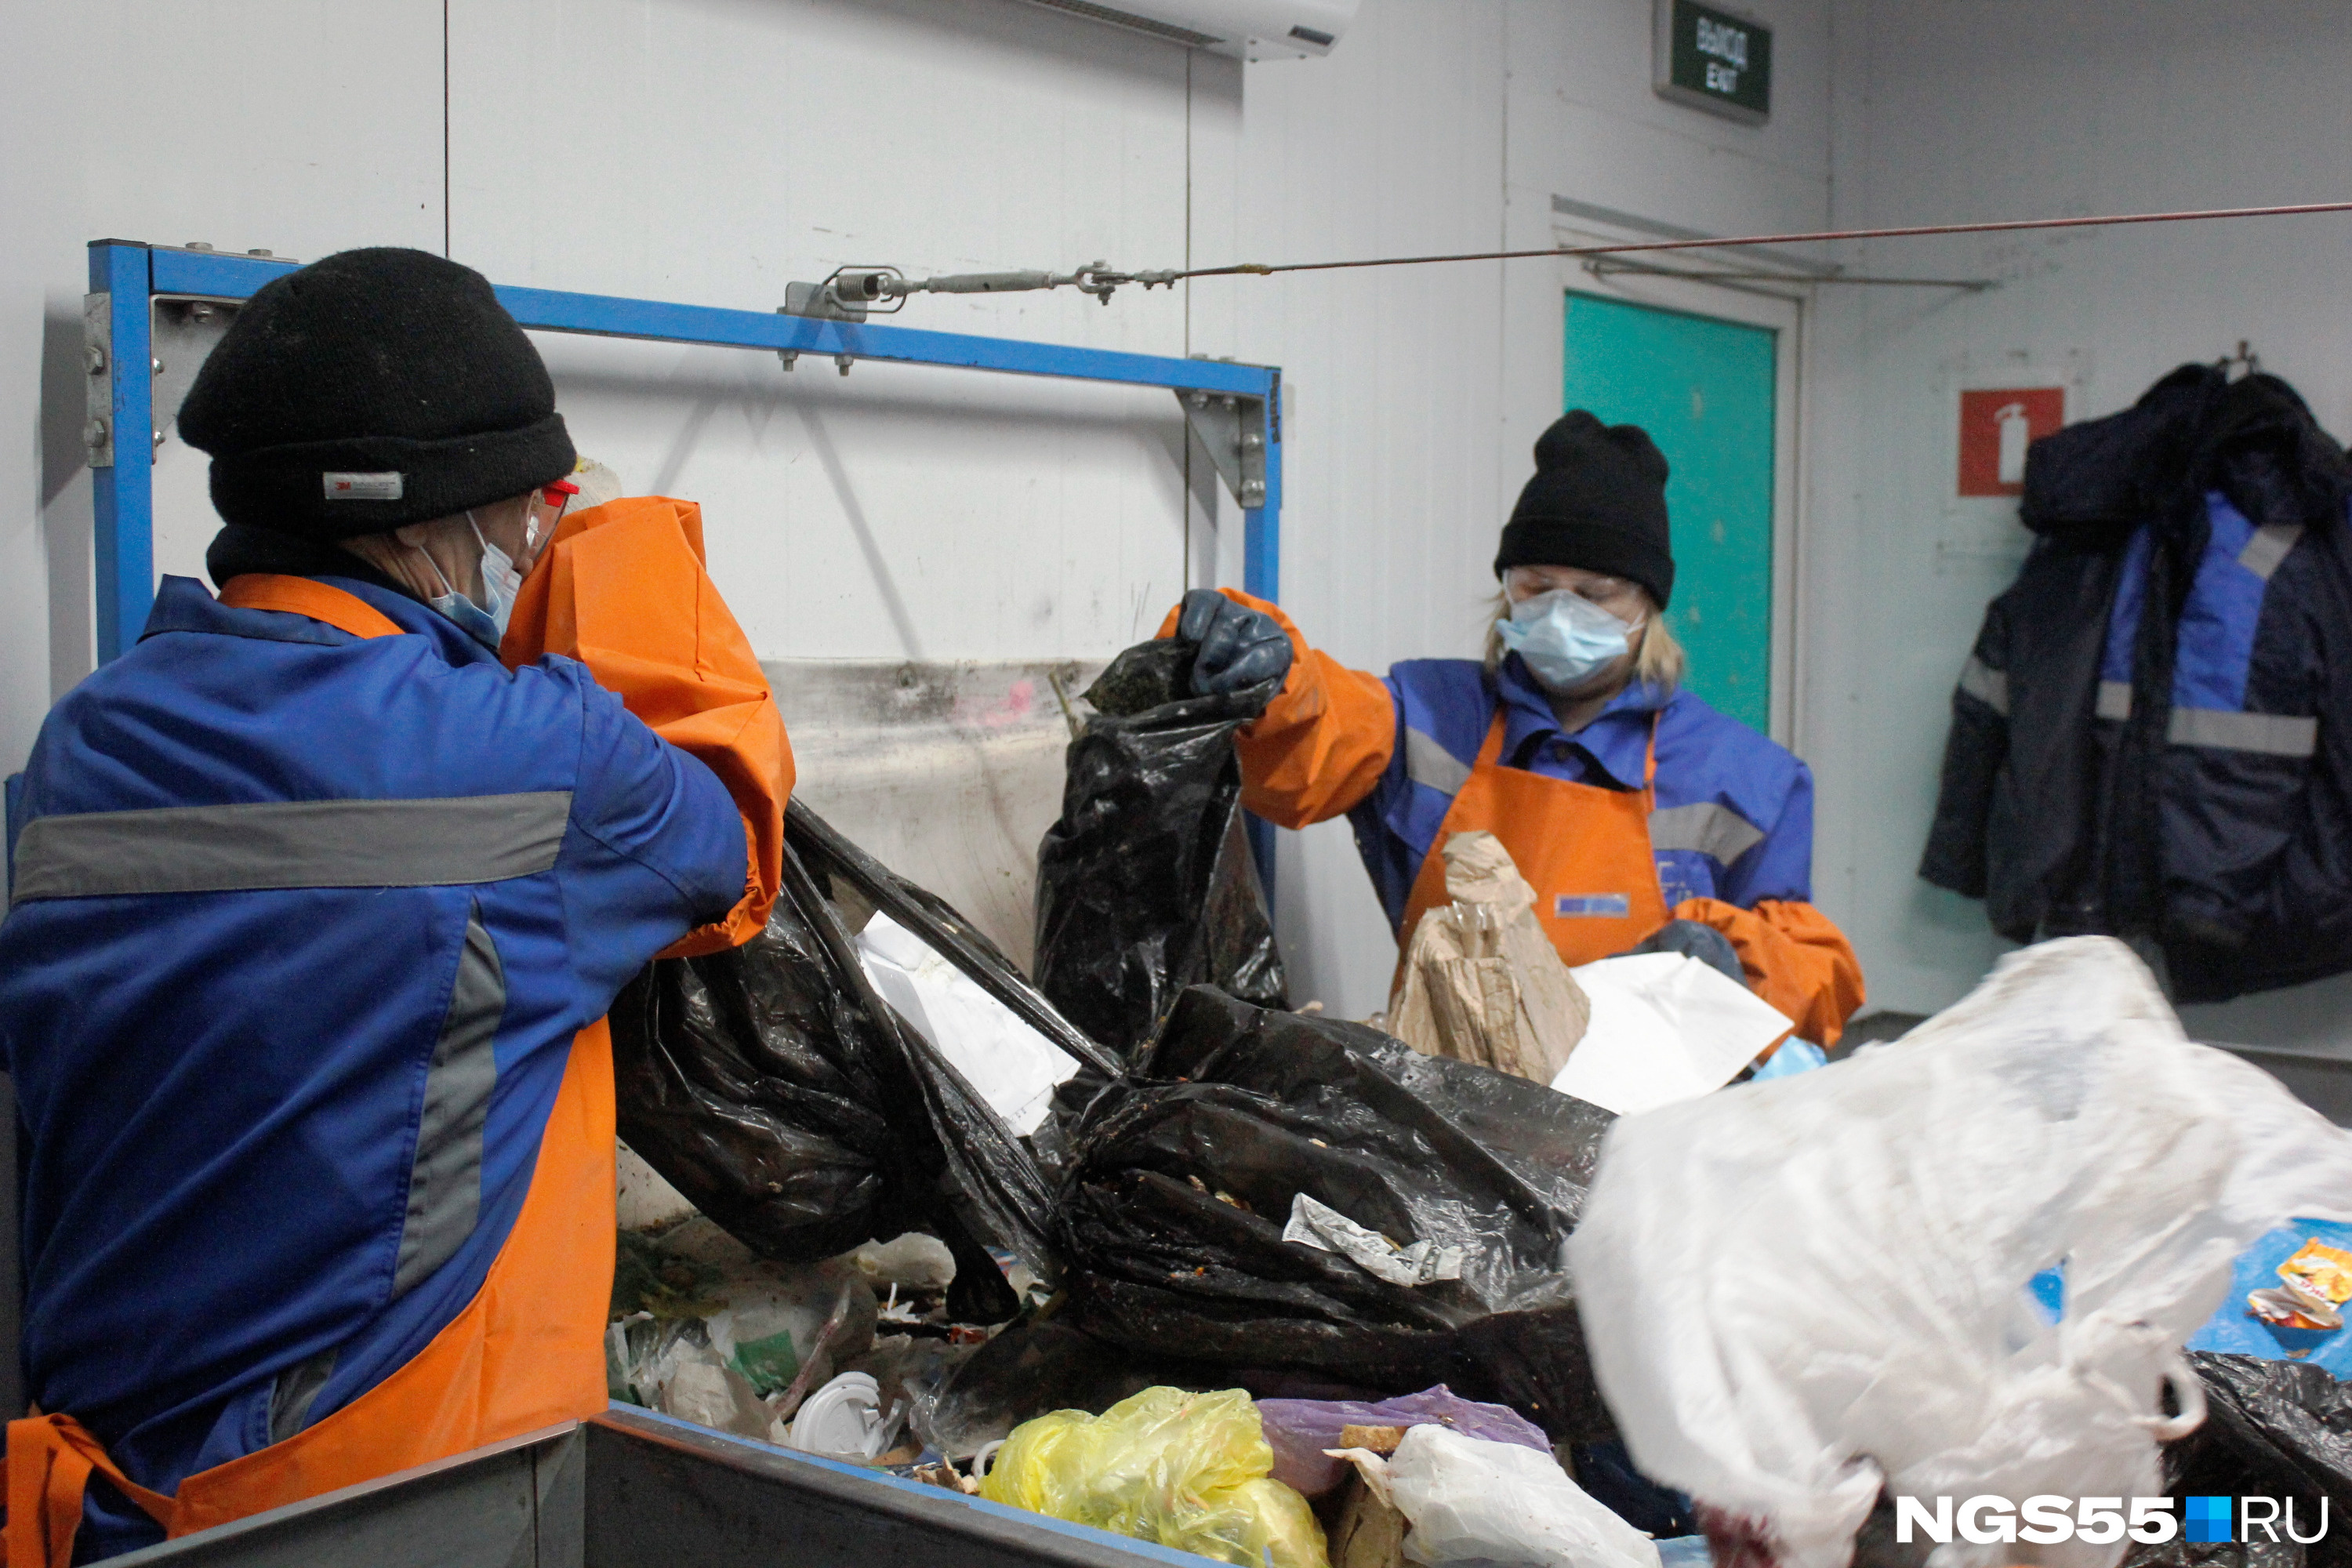 Здесь рабочие отбирают стеклянные бутылки, пленки и пакеты — в помещении около <nobr class="_">8 человек</nobr>, которые бросают отсортированный мусор в ящики